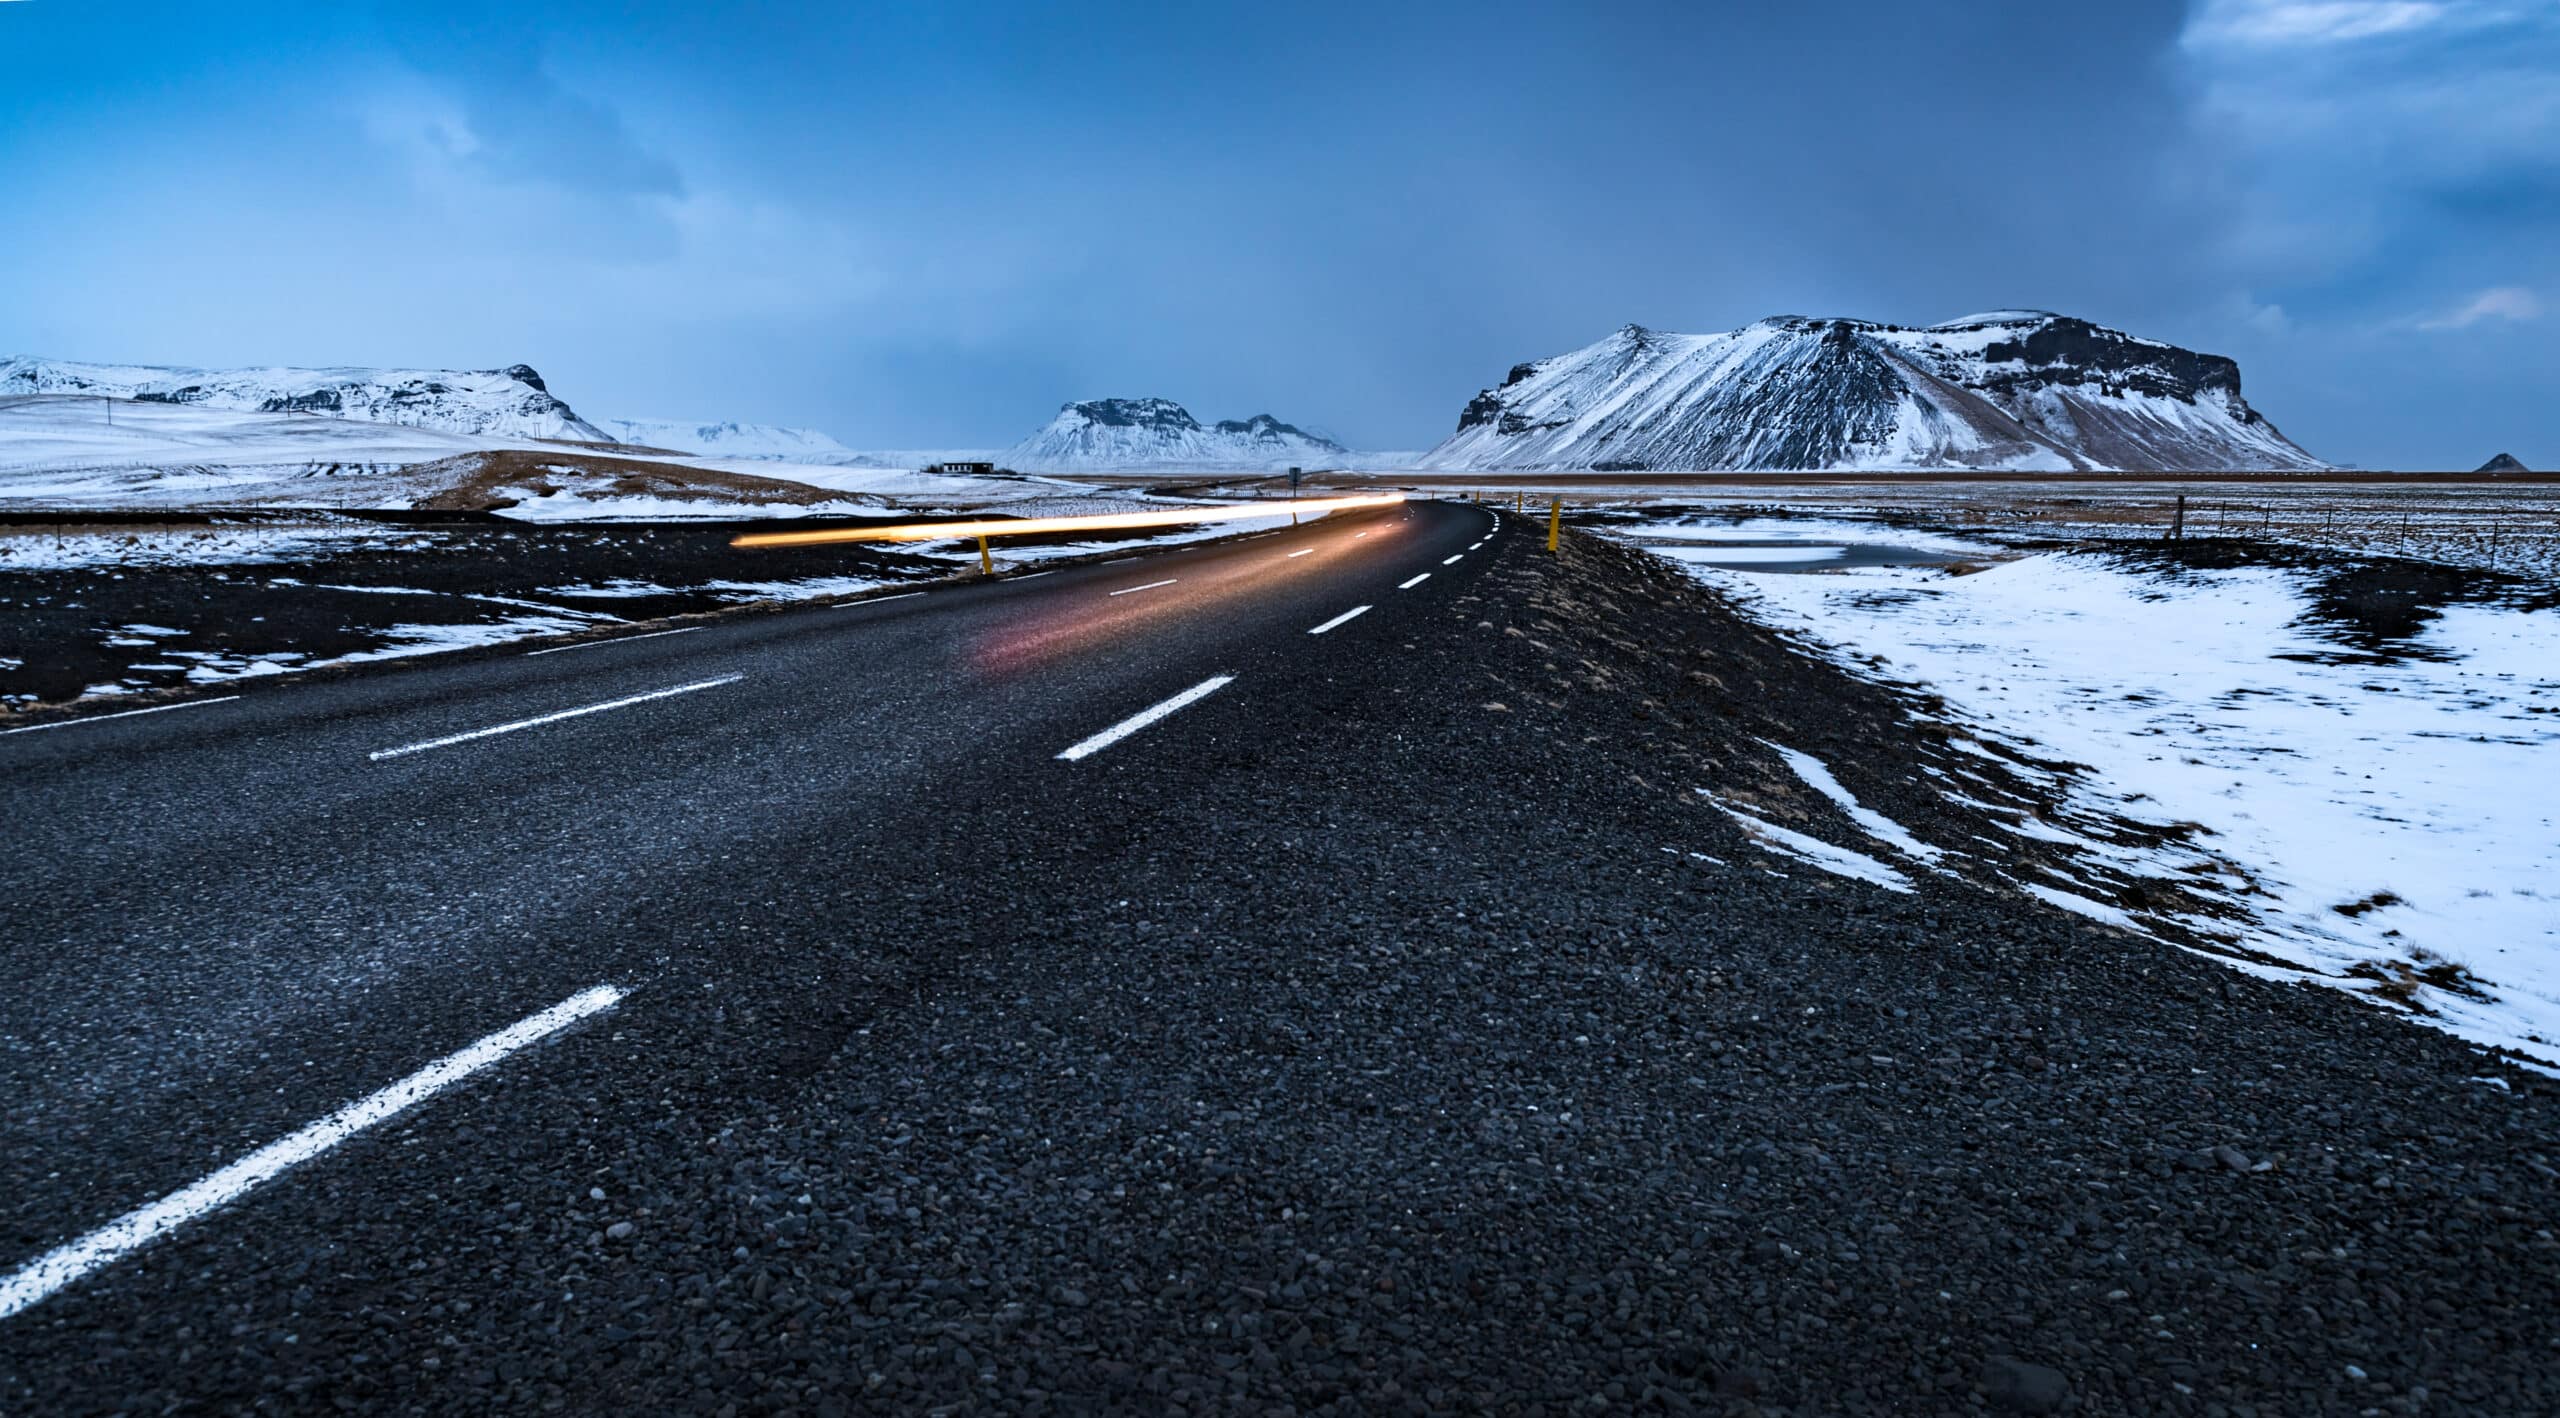 Magnifique paysage d'hiver, autoroute vide avec bord de route enneigé autour, vacances en hiver en Islande